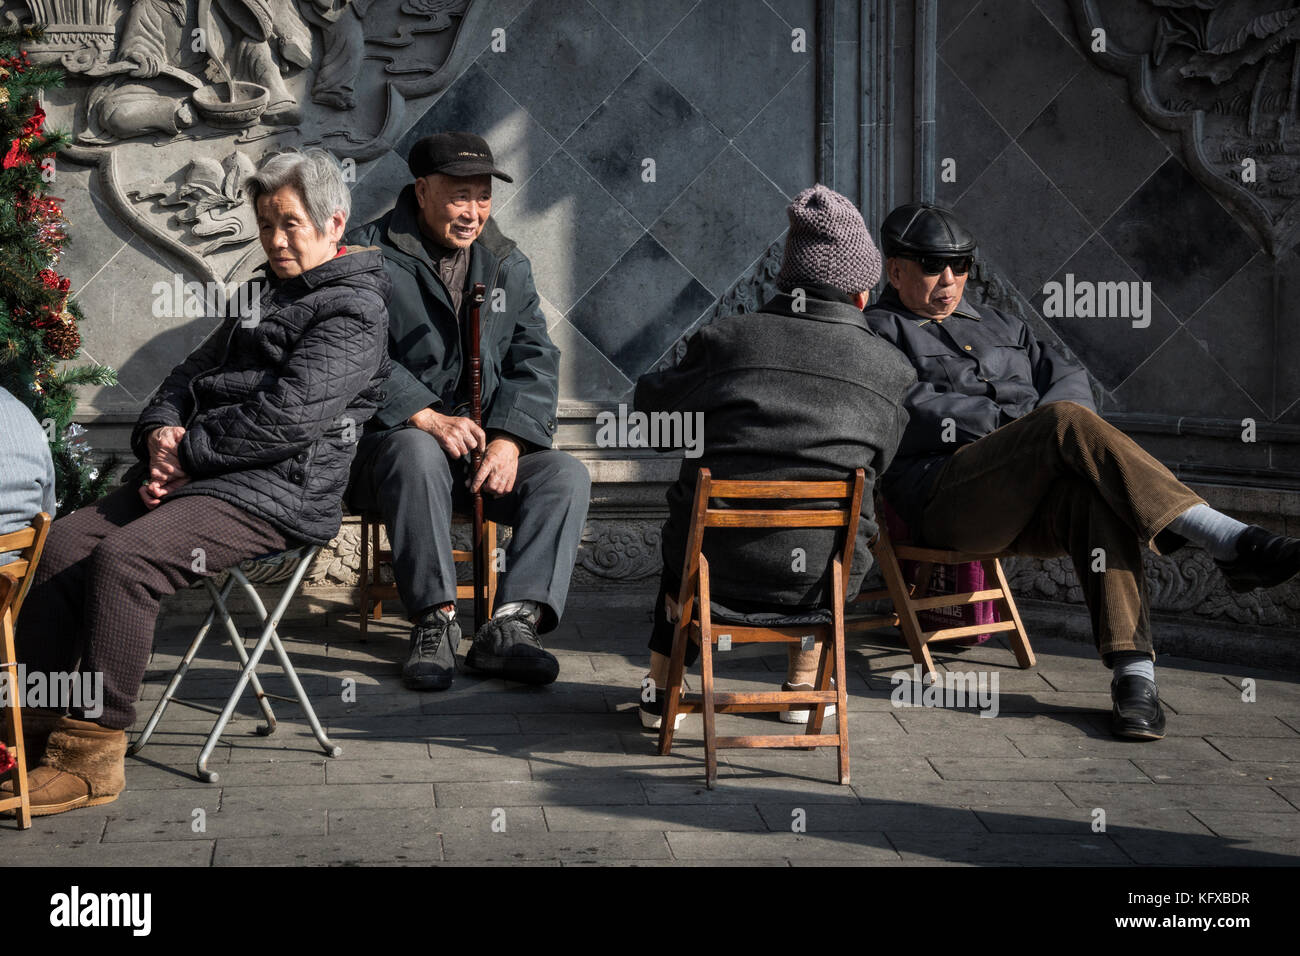 The elderly sitting and socializing, Shanghai Stock Photo